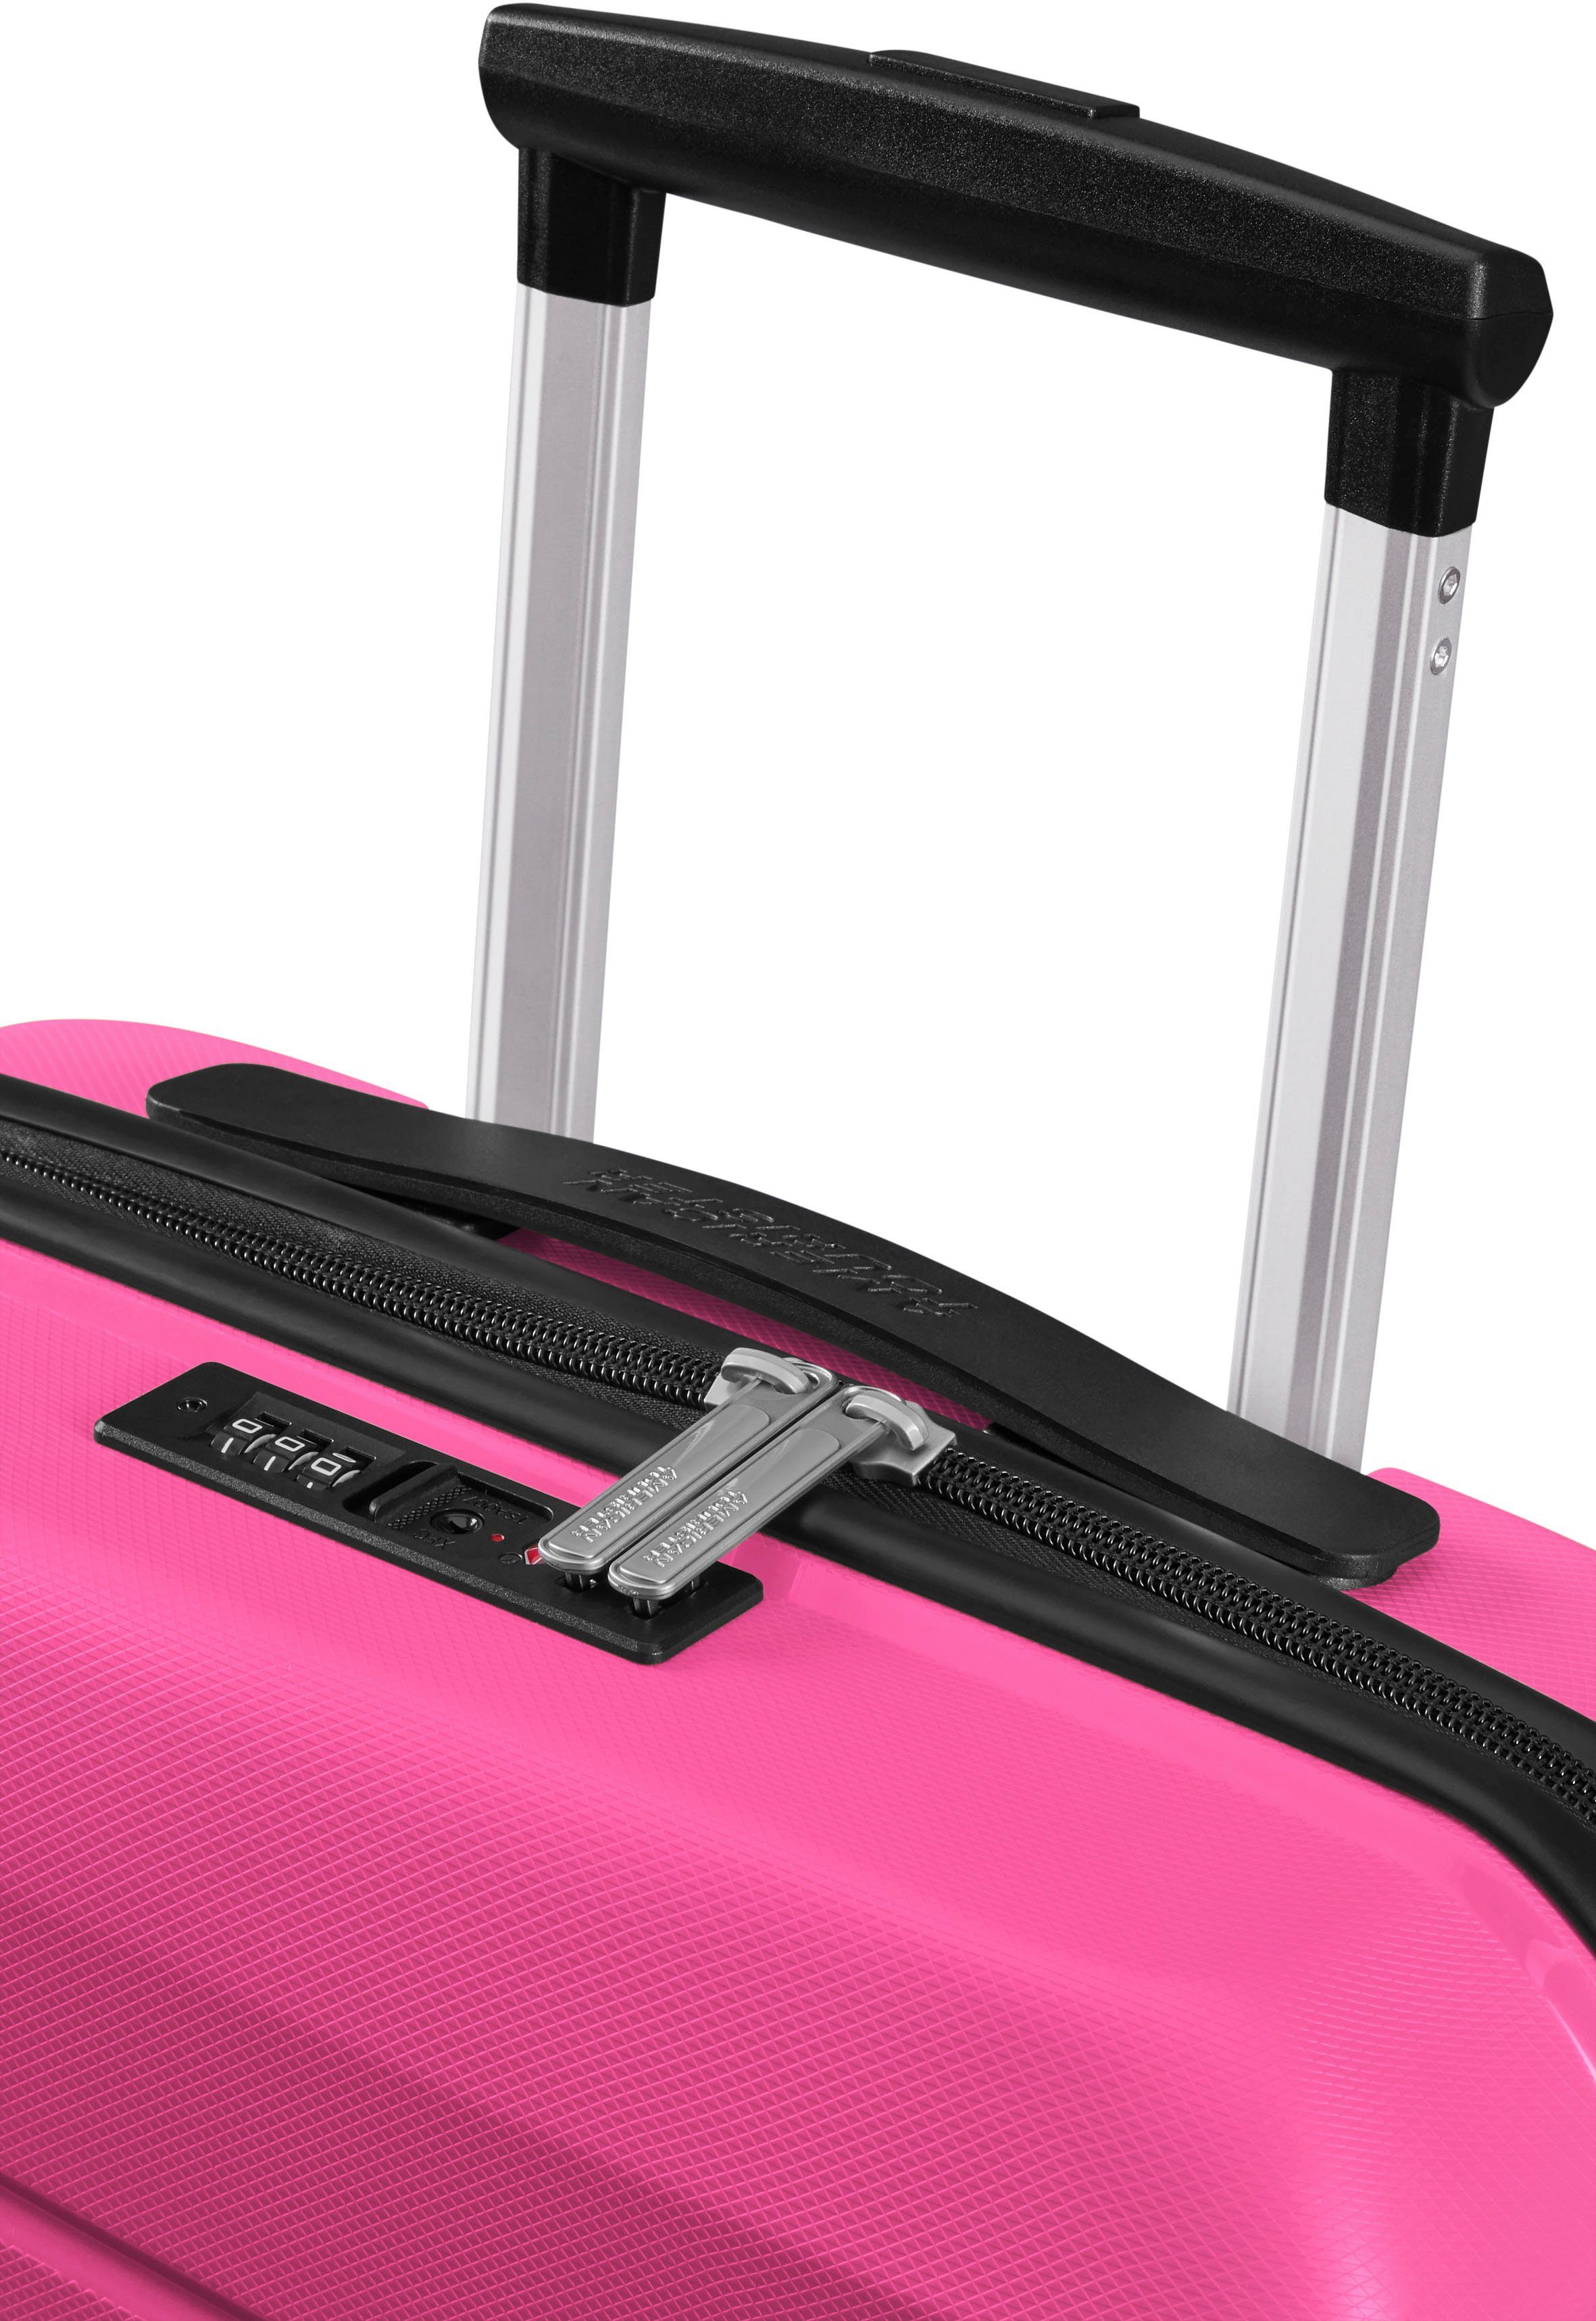 American Tourister® Hartschalen-Trolley Air Move, 55 Peace 4 cm, Pink Rollen